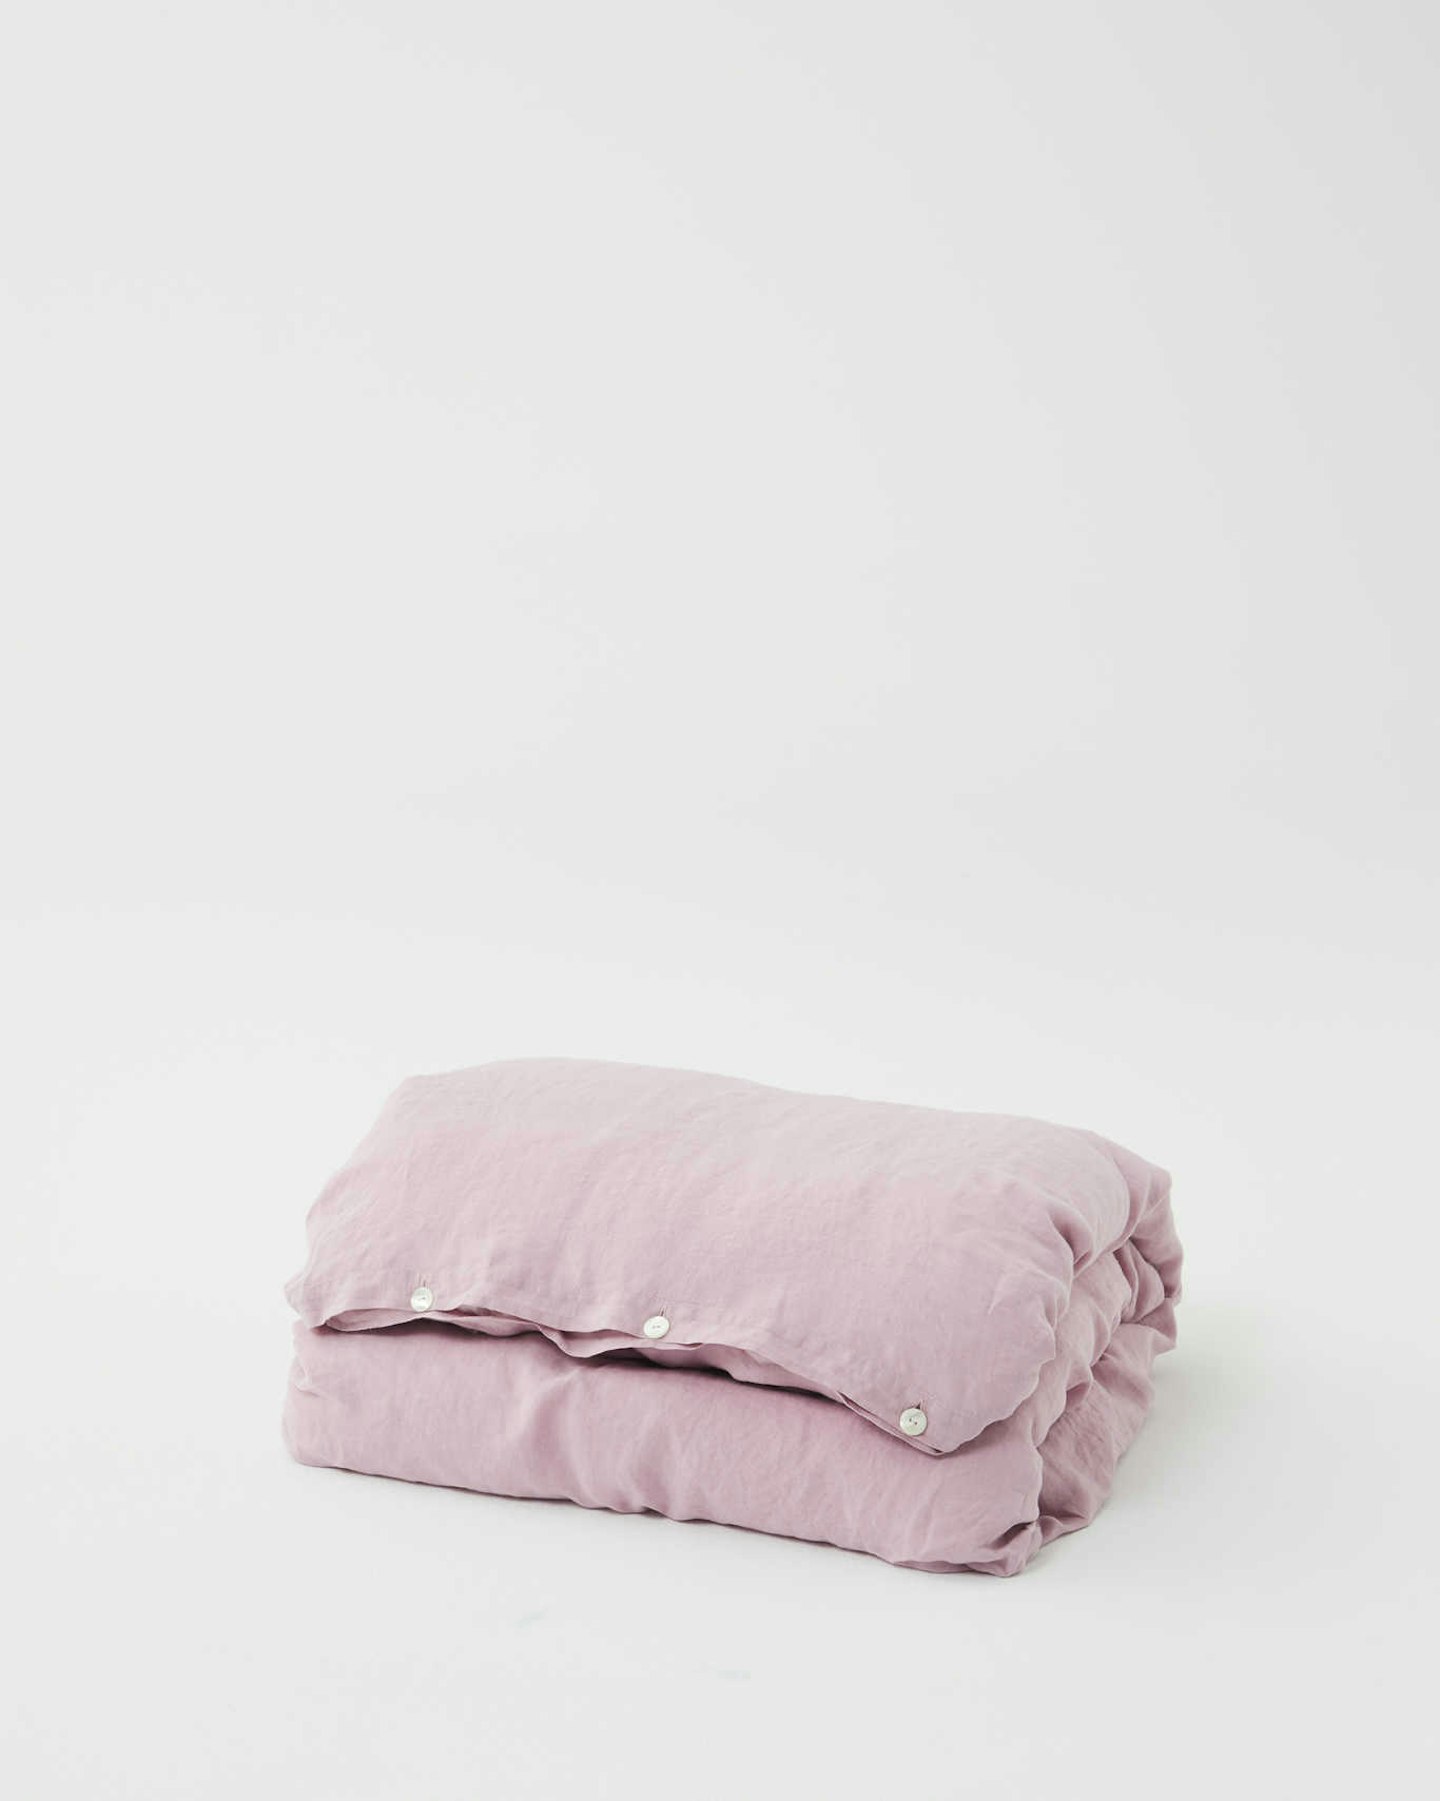 Tekla, Linen Bedding in Dawn Purple, from £35